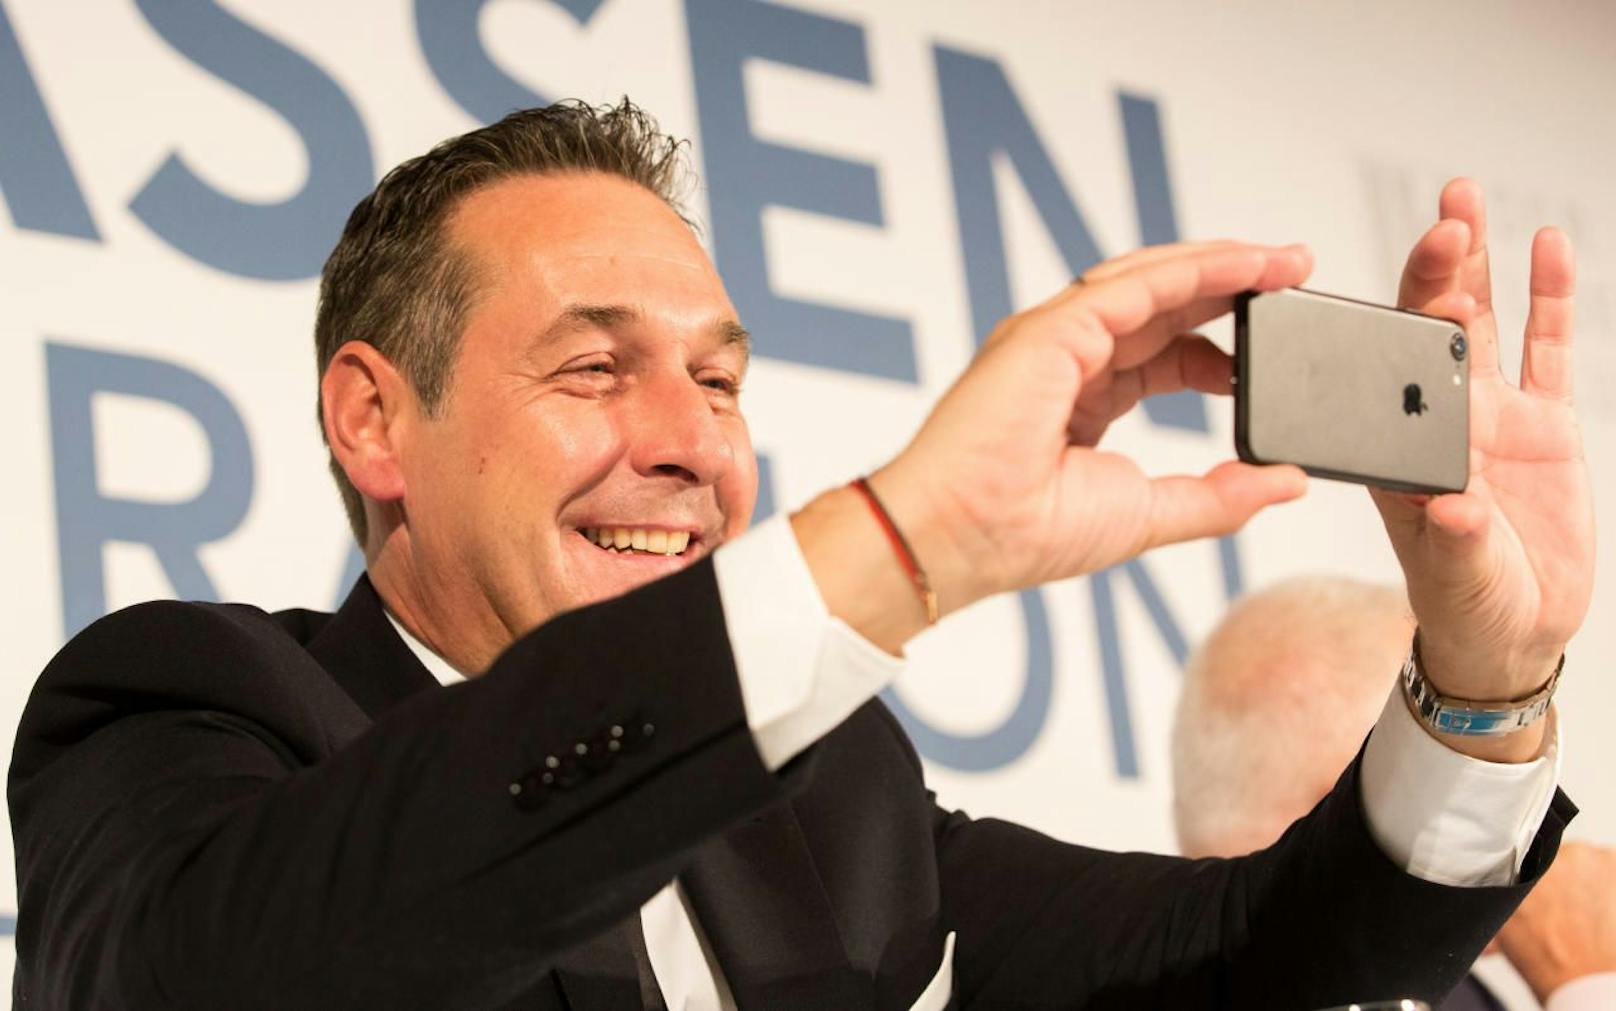 FPÖ-Chef Heinz-Christian Strache macht ein Foto mit seinem Smartphone.